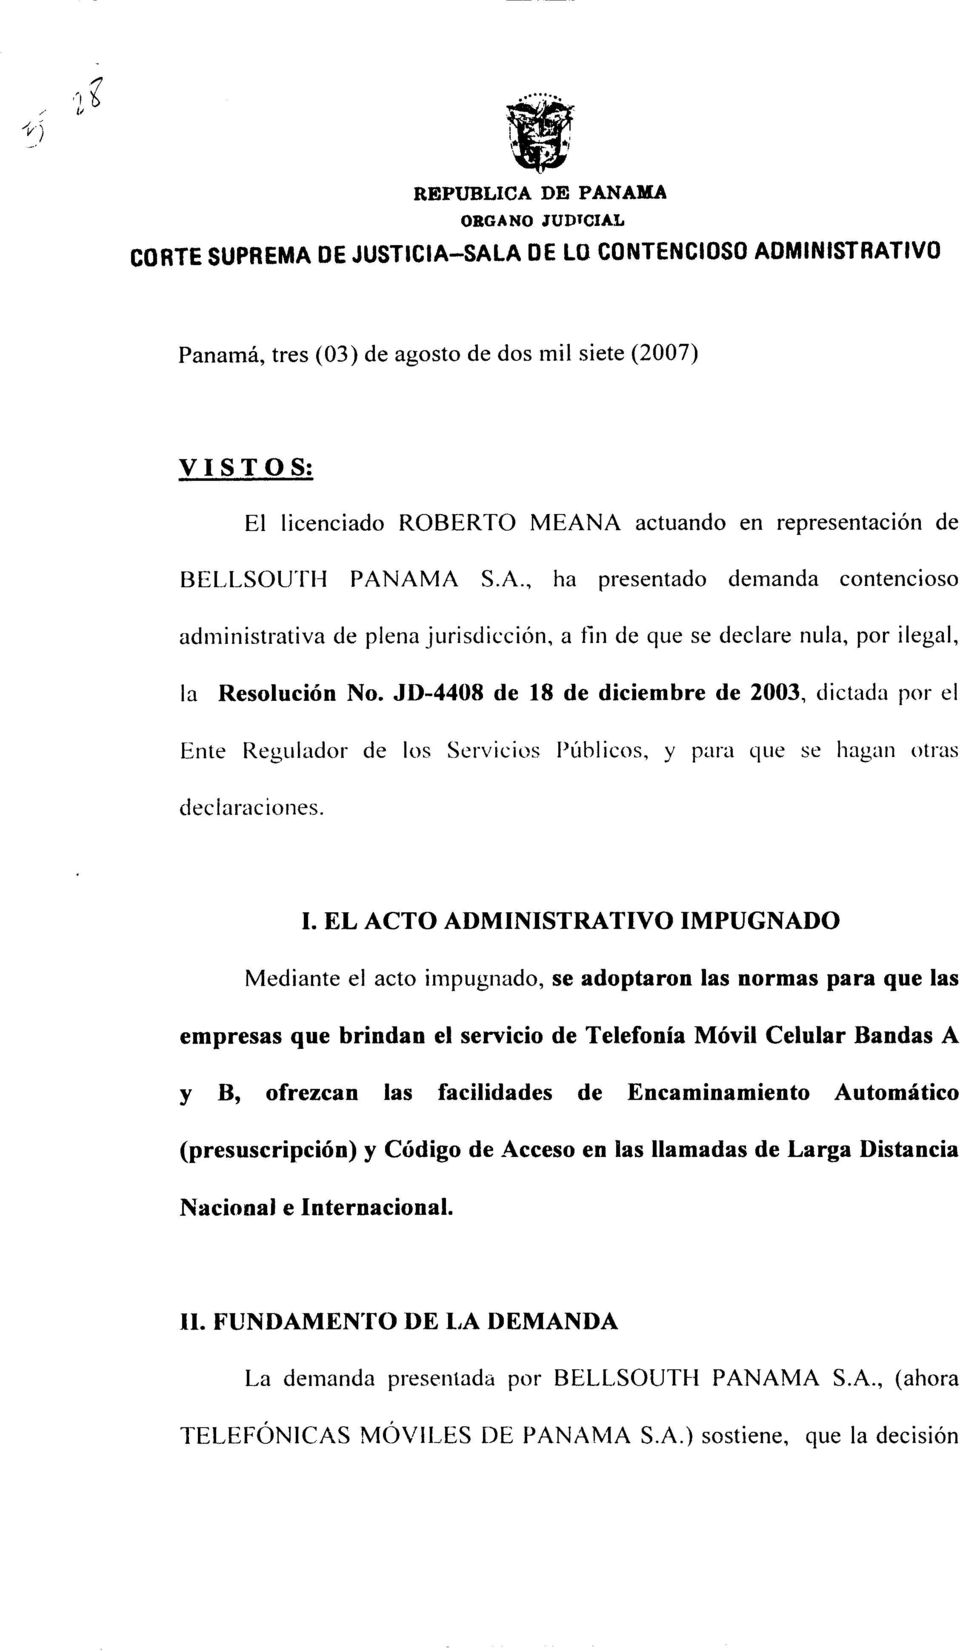 actuando en representación de BELLSOUTI-I PANAMA S.A., ha presentado demanda contencioso administrativa de plena jurisdicción, a fin de que se declare nula, por ilegal, la Resolución No.